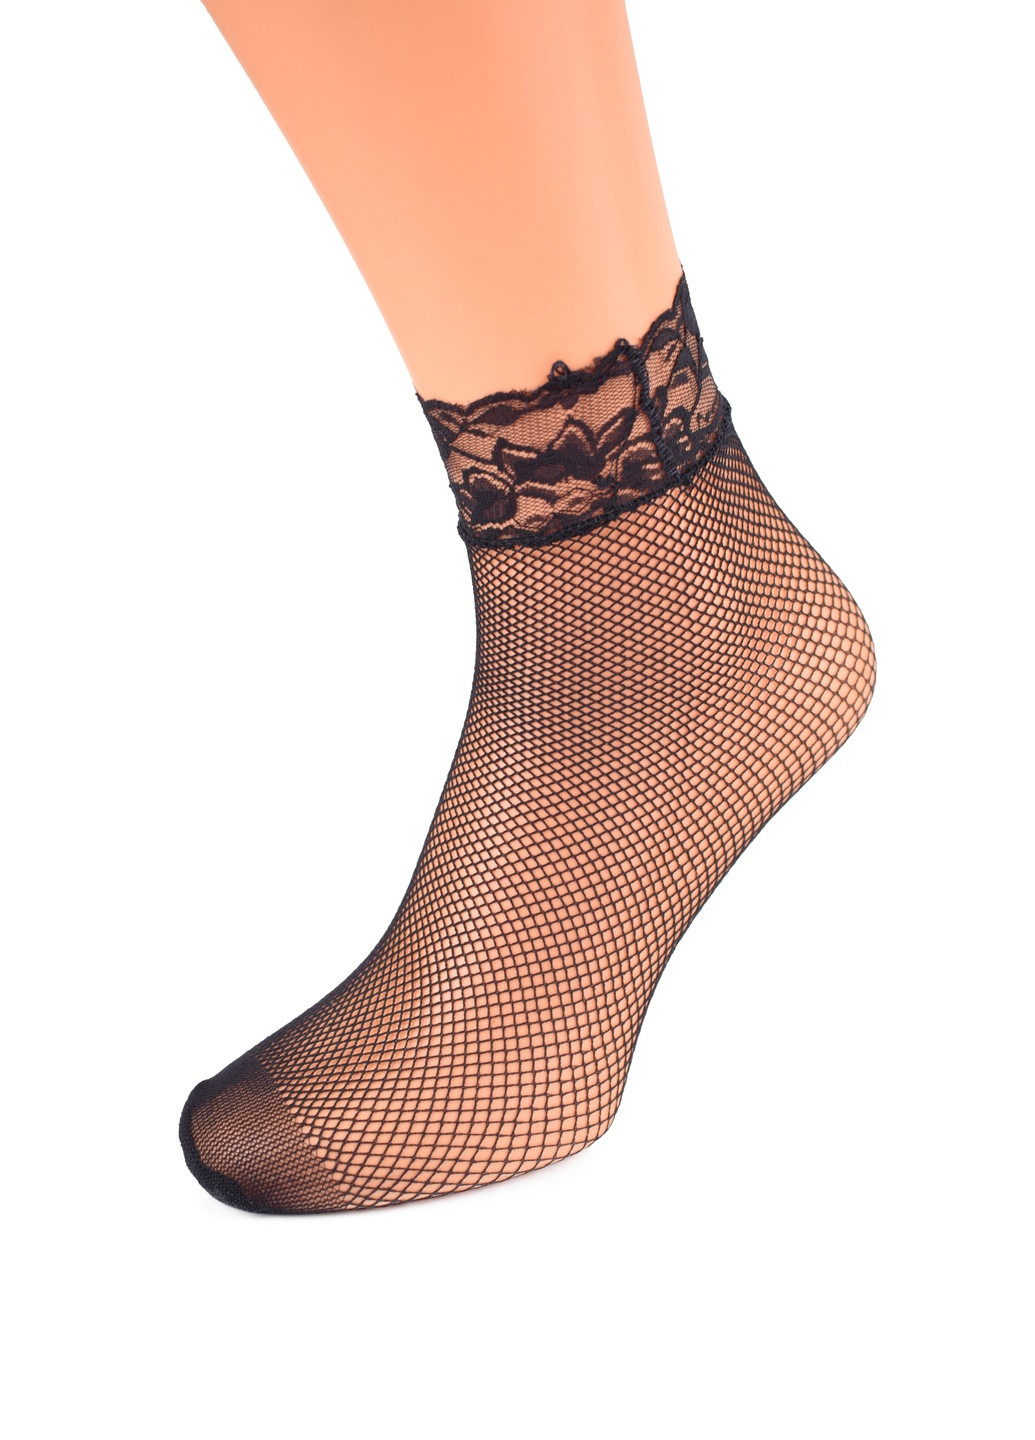 Капроновые носки в сеточку (2 пары) Fashion однотонные чёрные повседневные